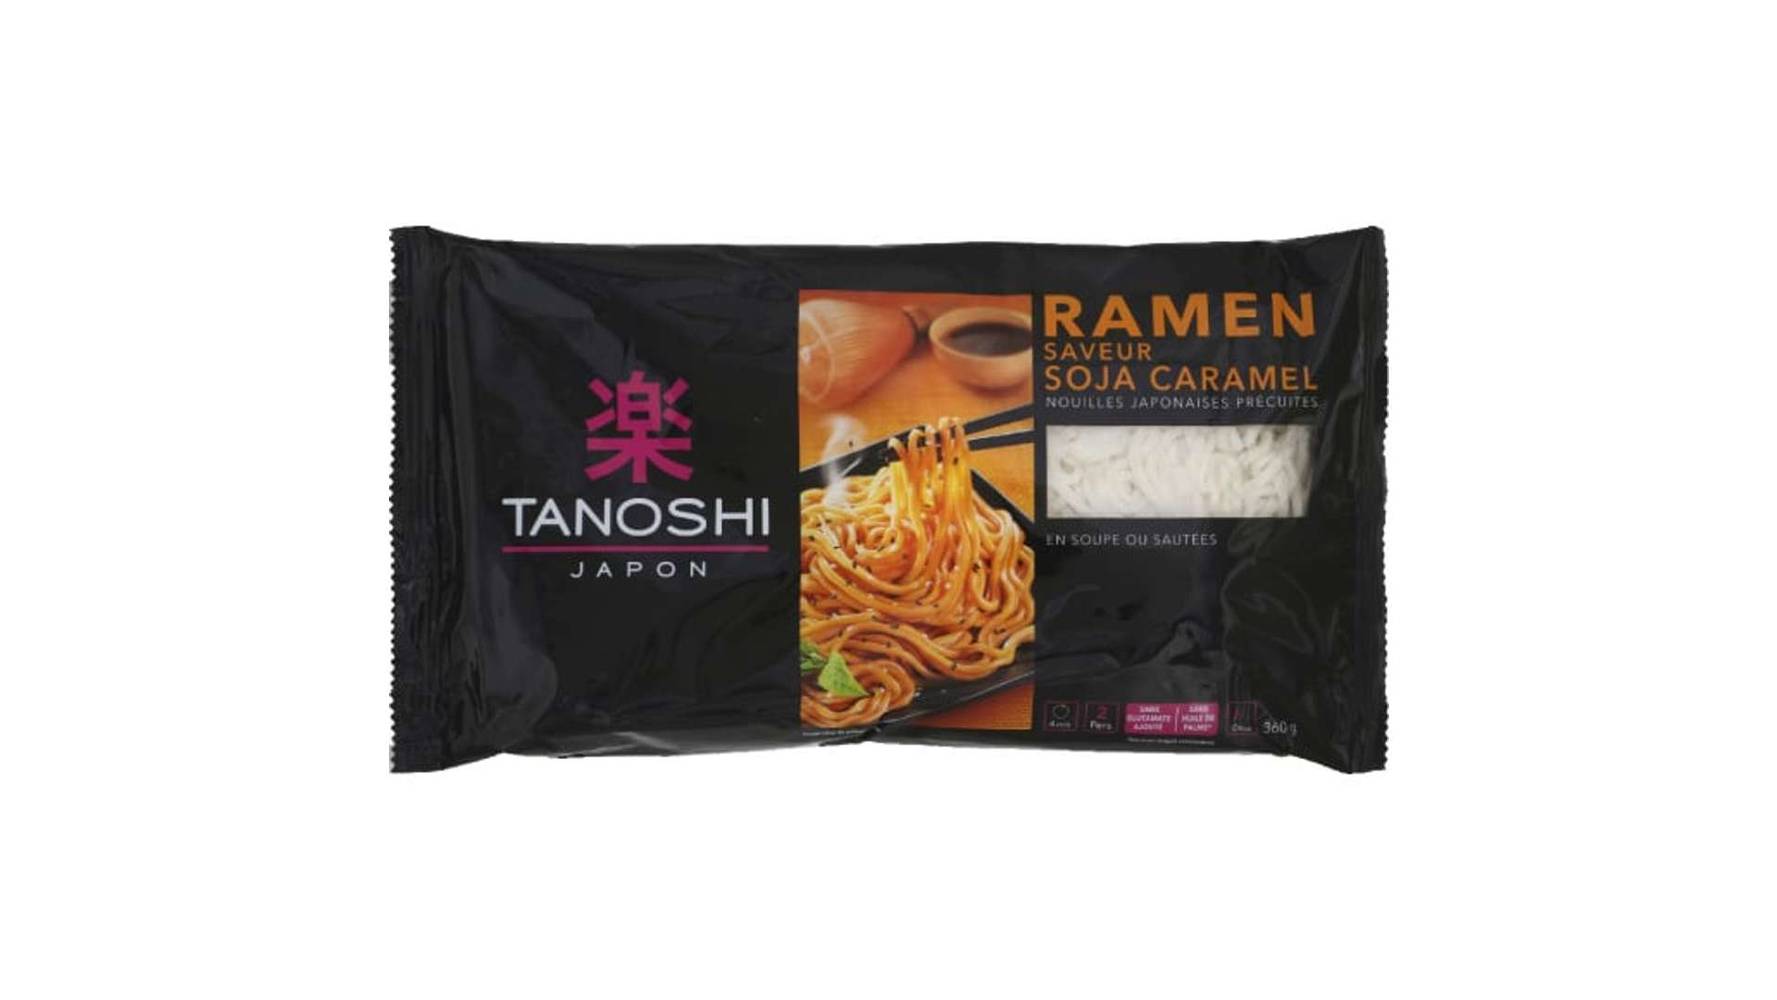 Tanoshi Ramen soja/caramel, nouilles Japonaises précuites, pour soupes ousautées Le sachet de 360g